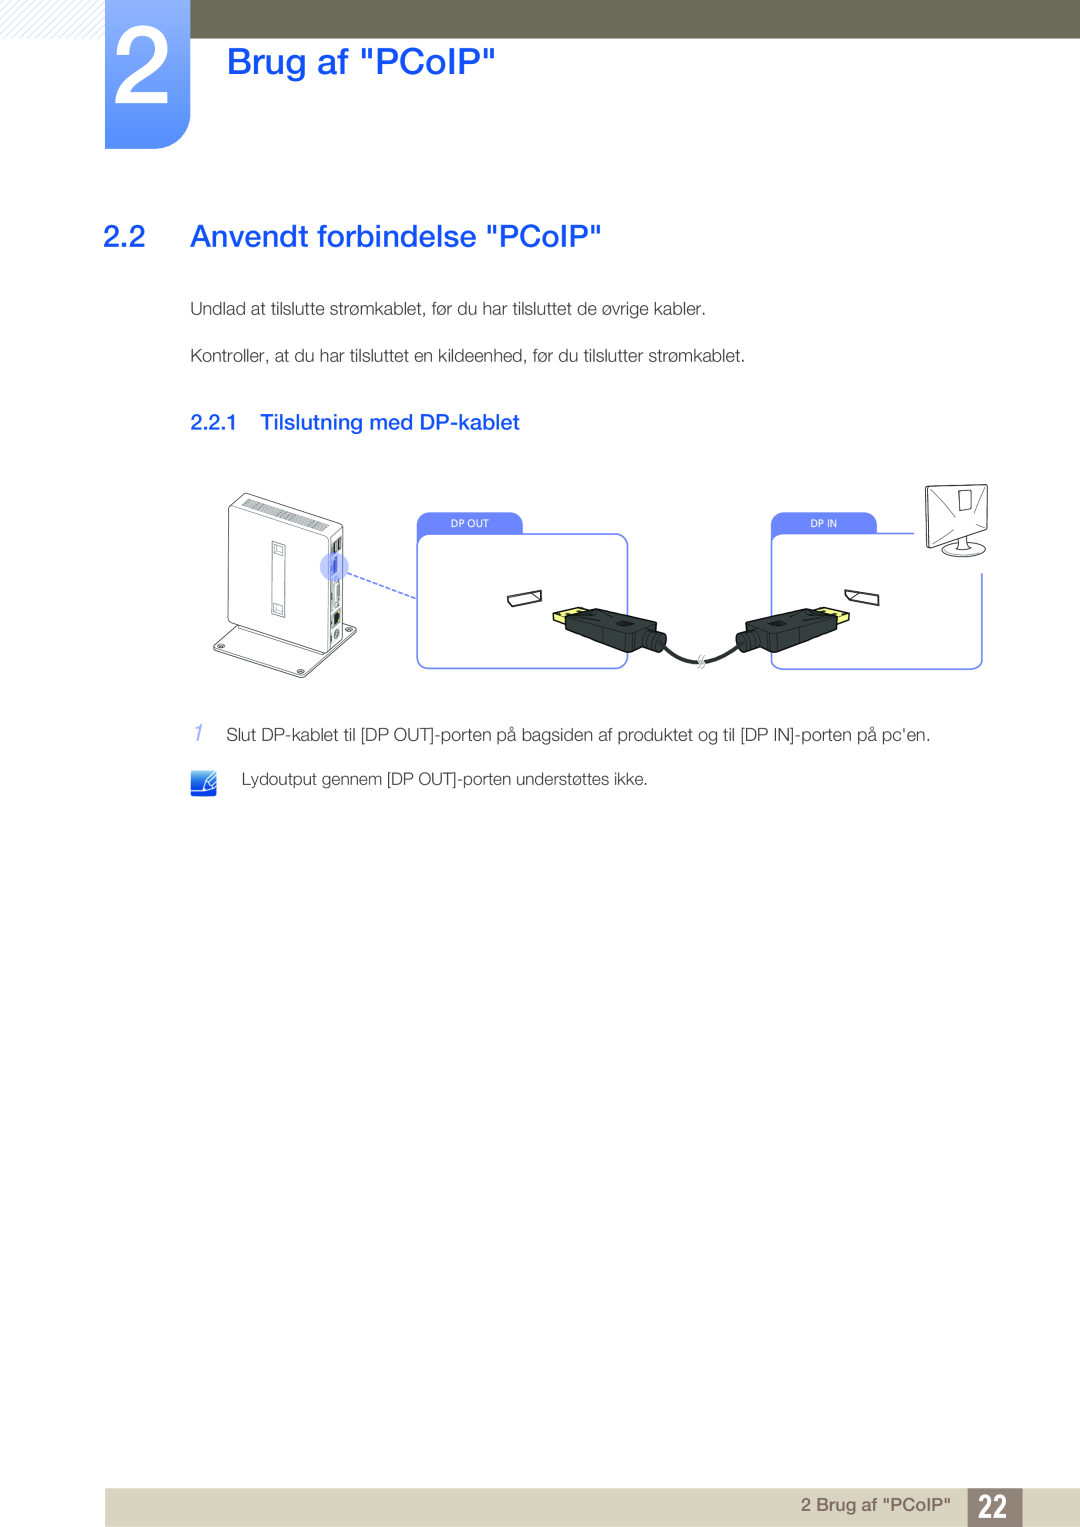 Samsung LF-NXN2N/EN, LF00FNXPFBZXEN manual Anvendt forbindelse PCoIP, Tilslutning med DP-kablet, Brug af PCoIP 